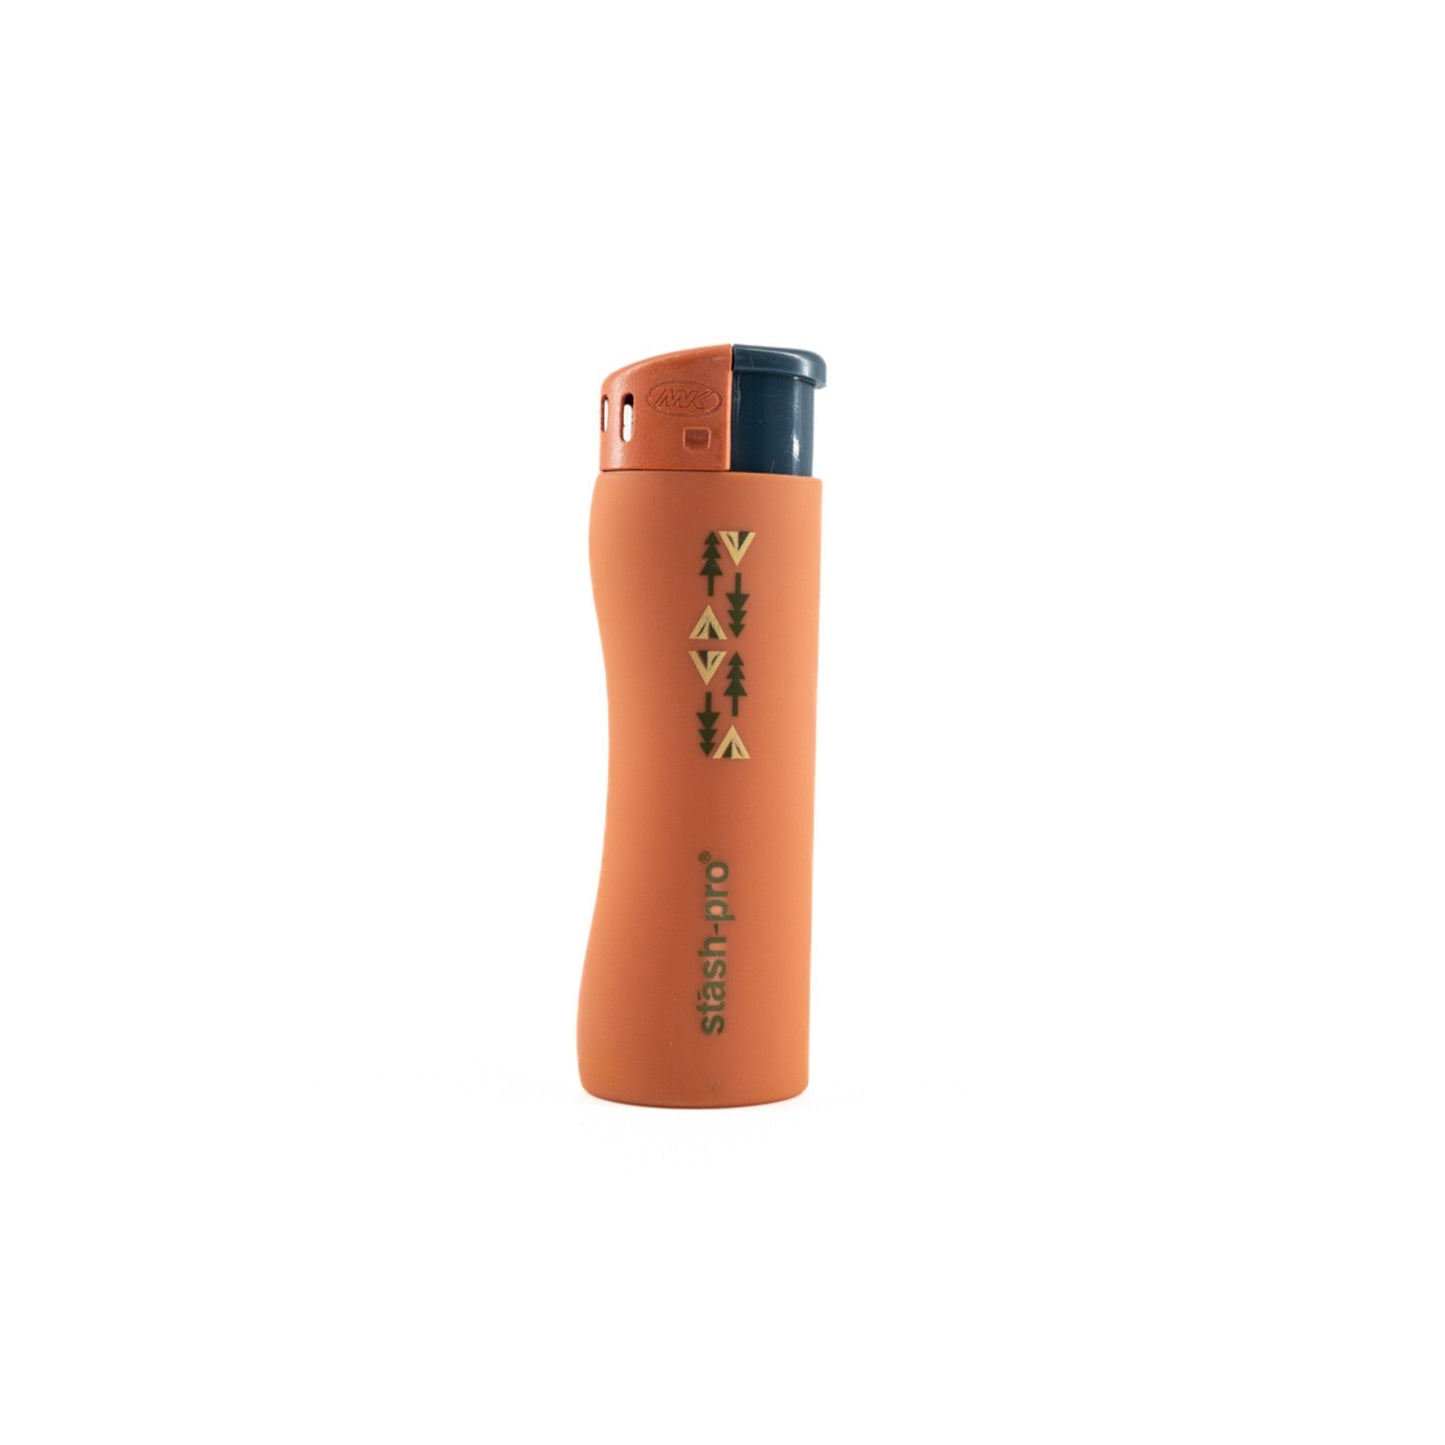 Stash-Pro Pocket Lighter Orange